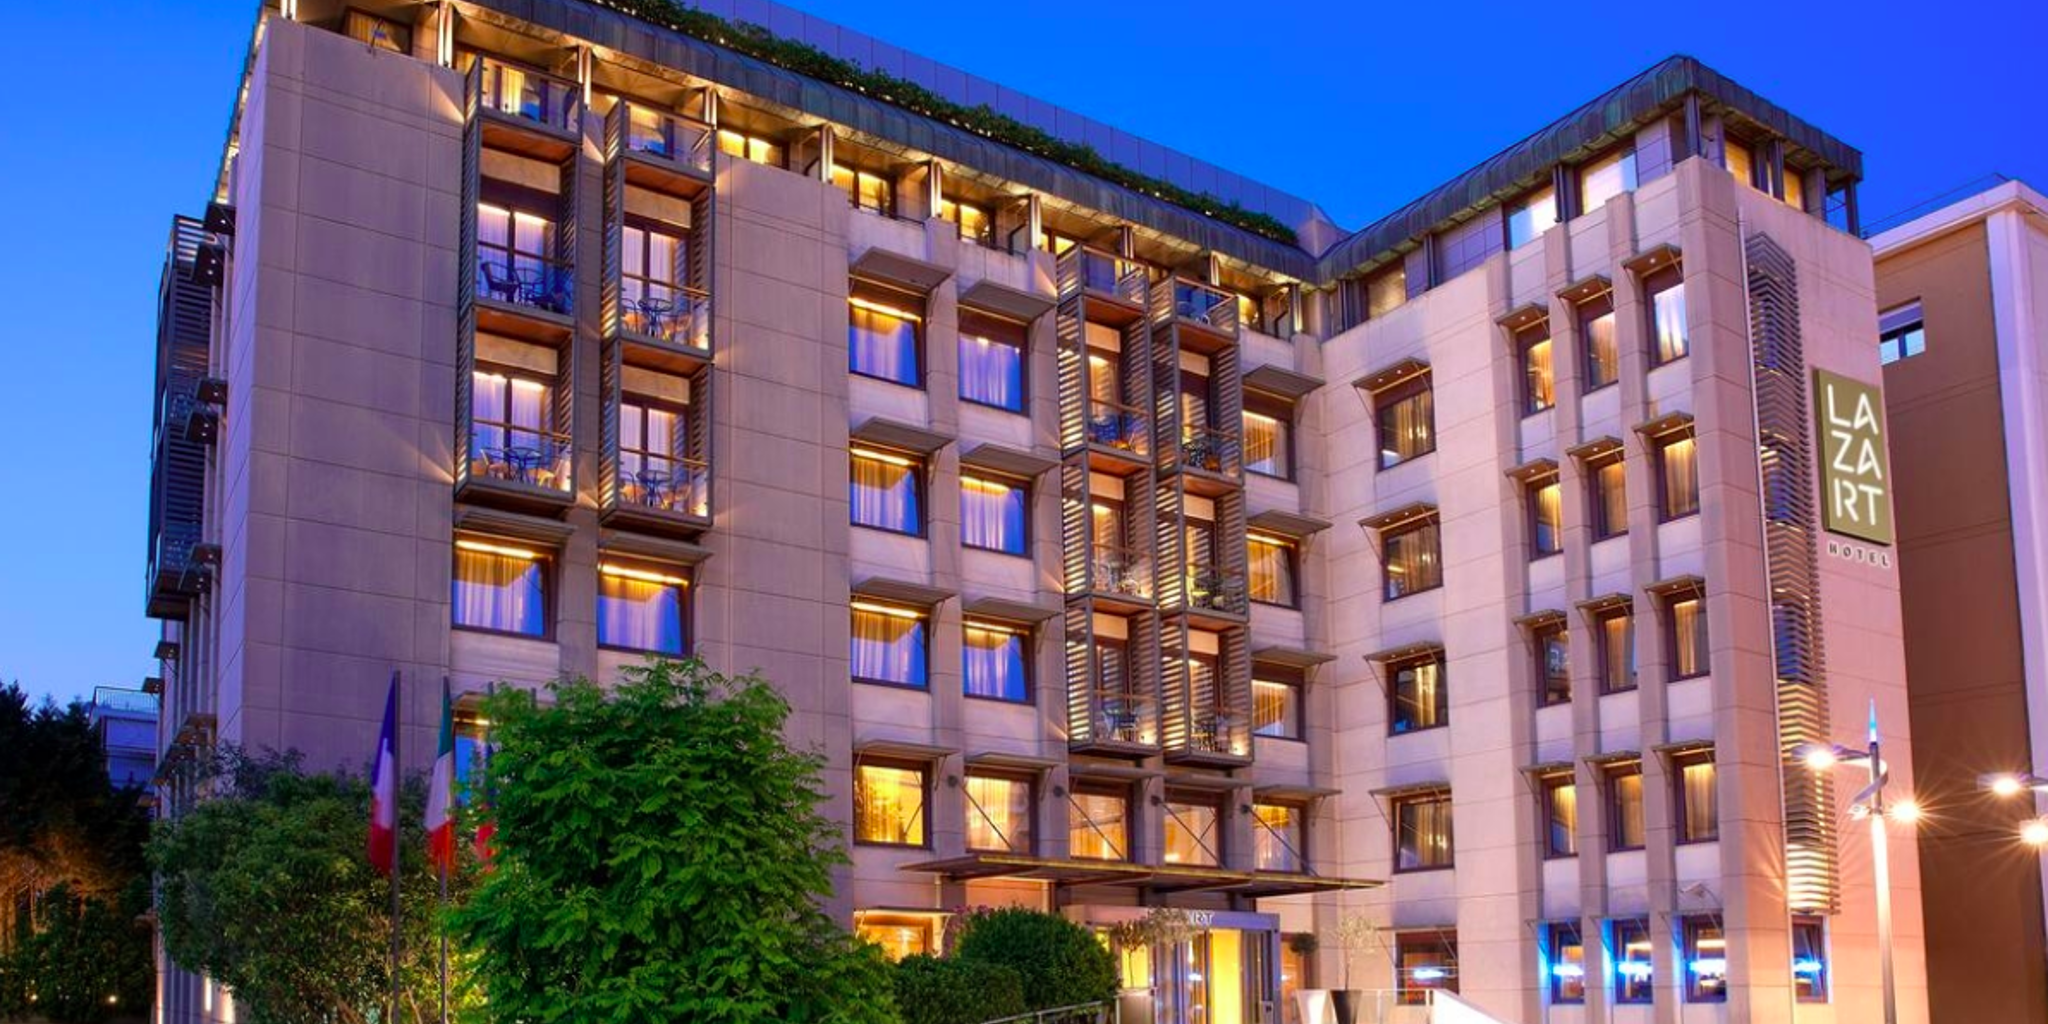 Pangaea REIC acquires Lazart Hotel